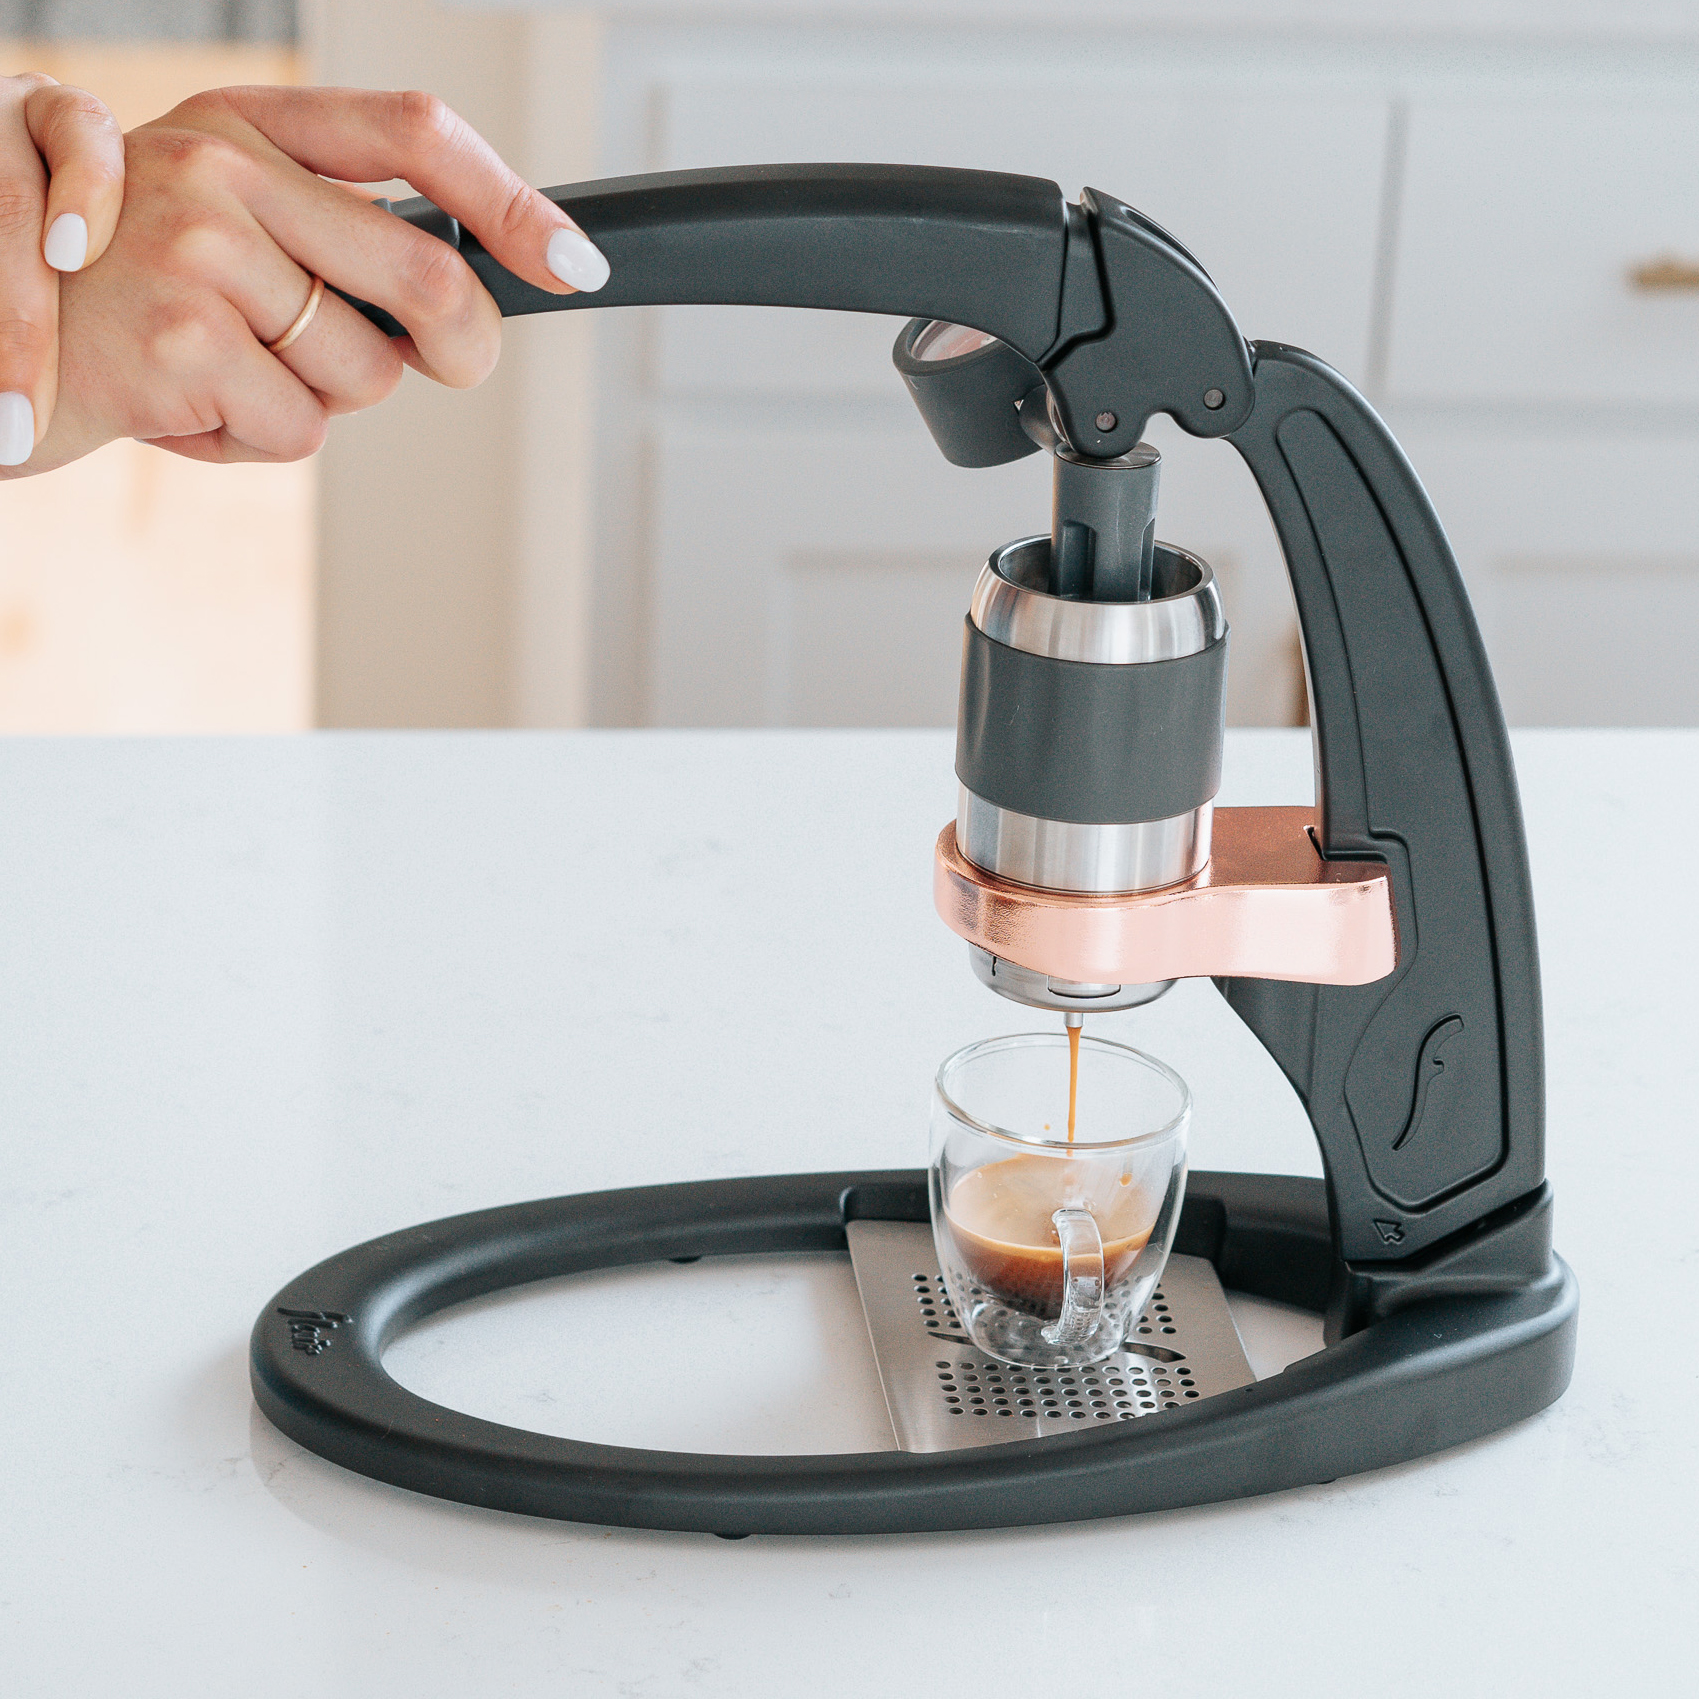 Flair PRO 2 | Manual Espresso Maker | Portable/Home Espresso